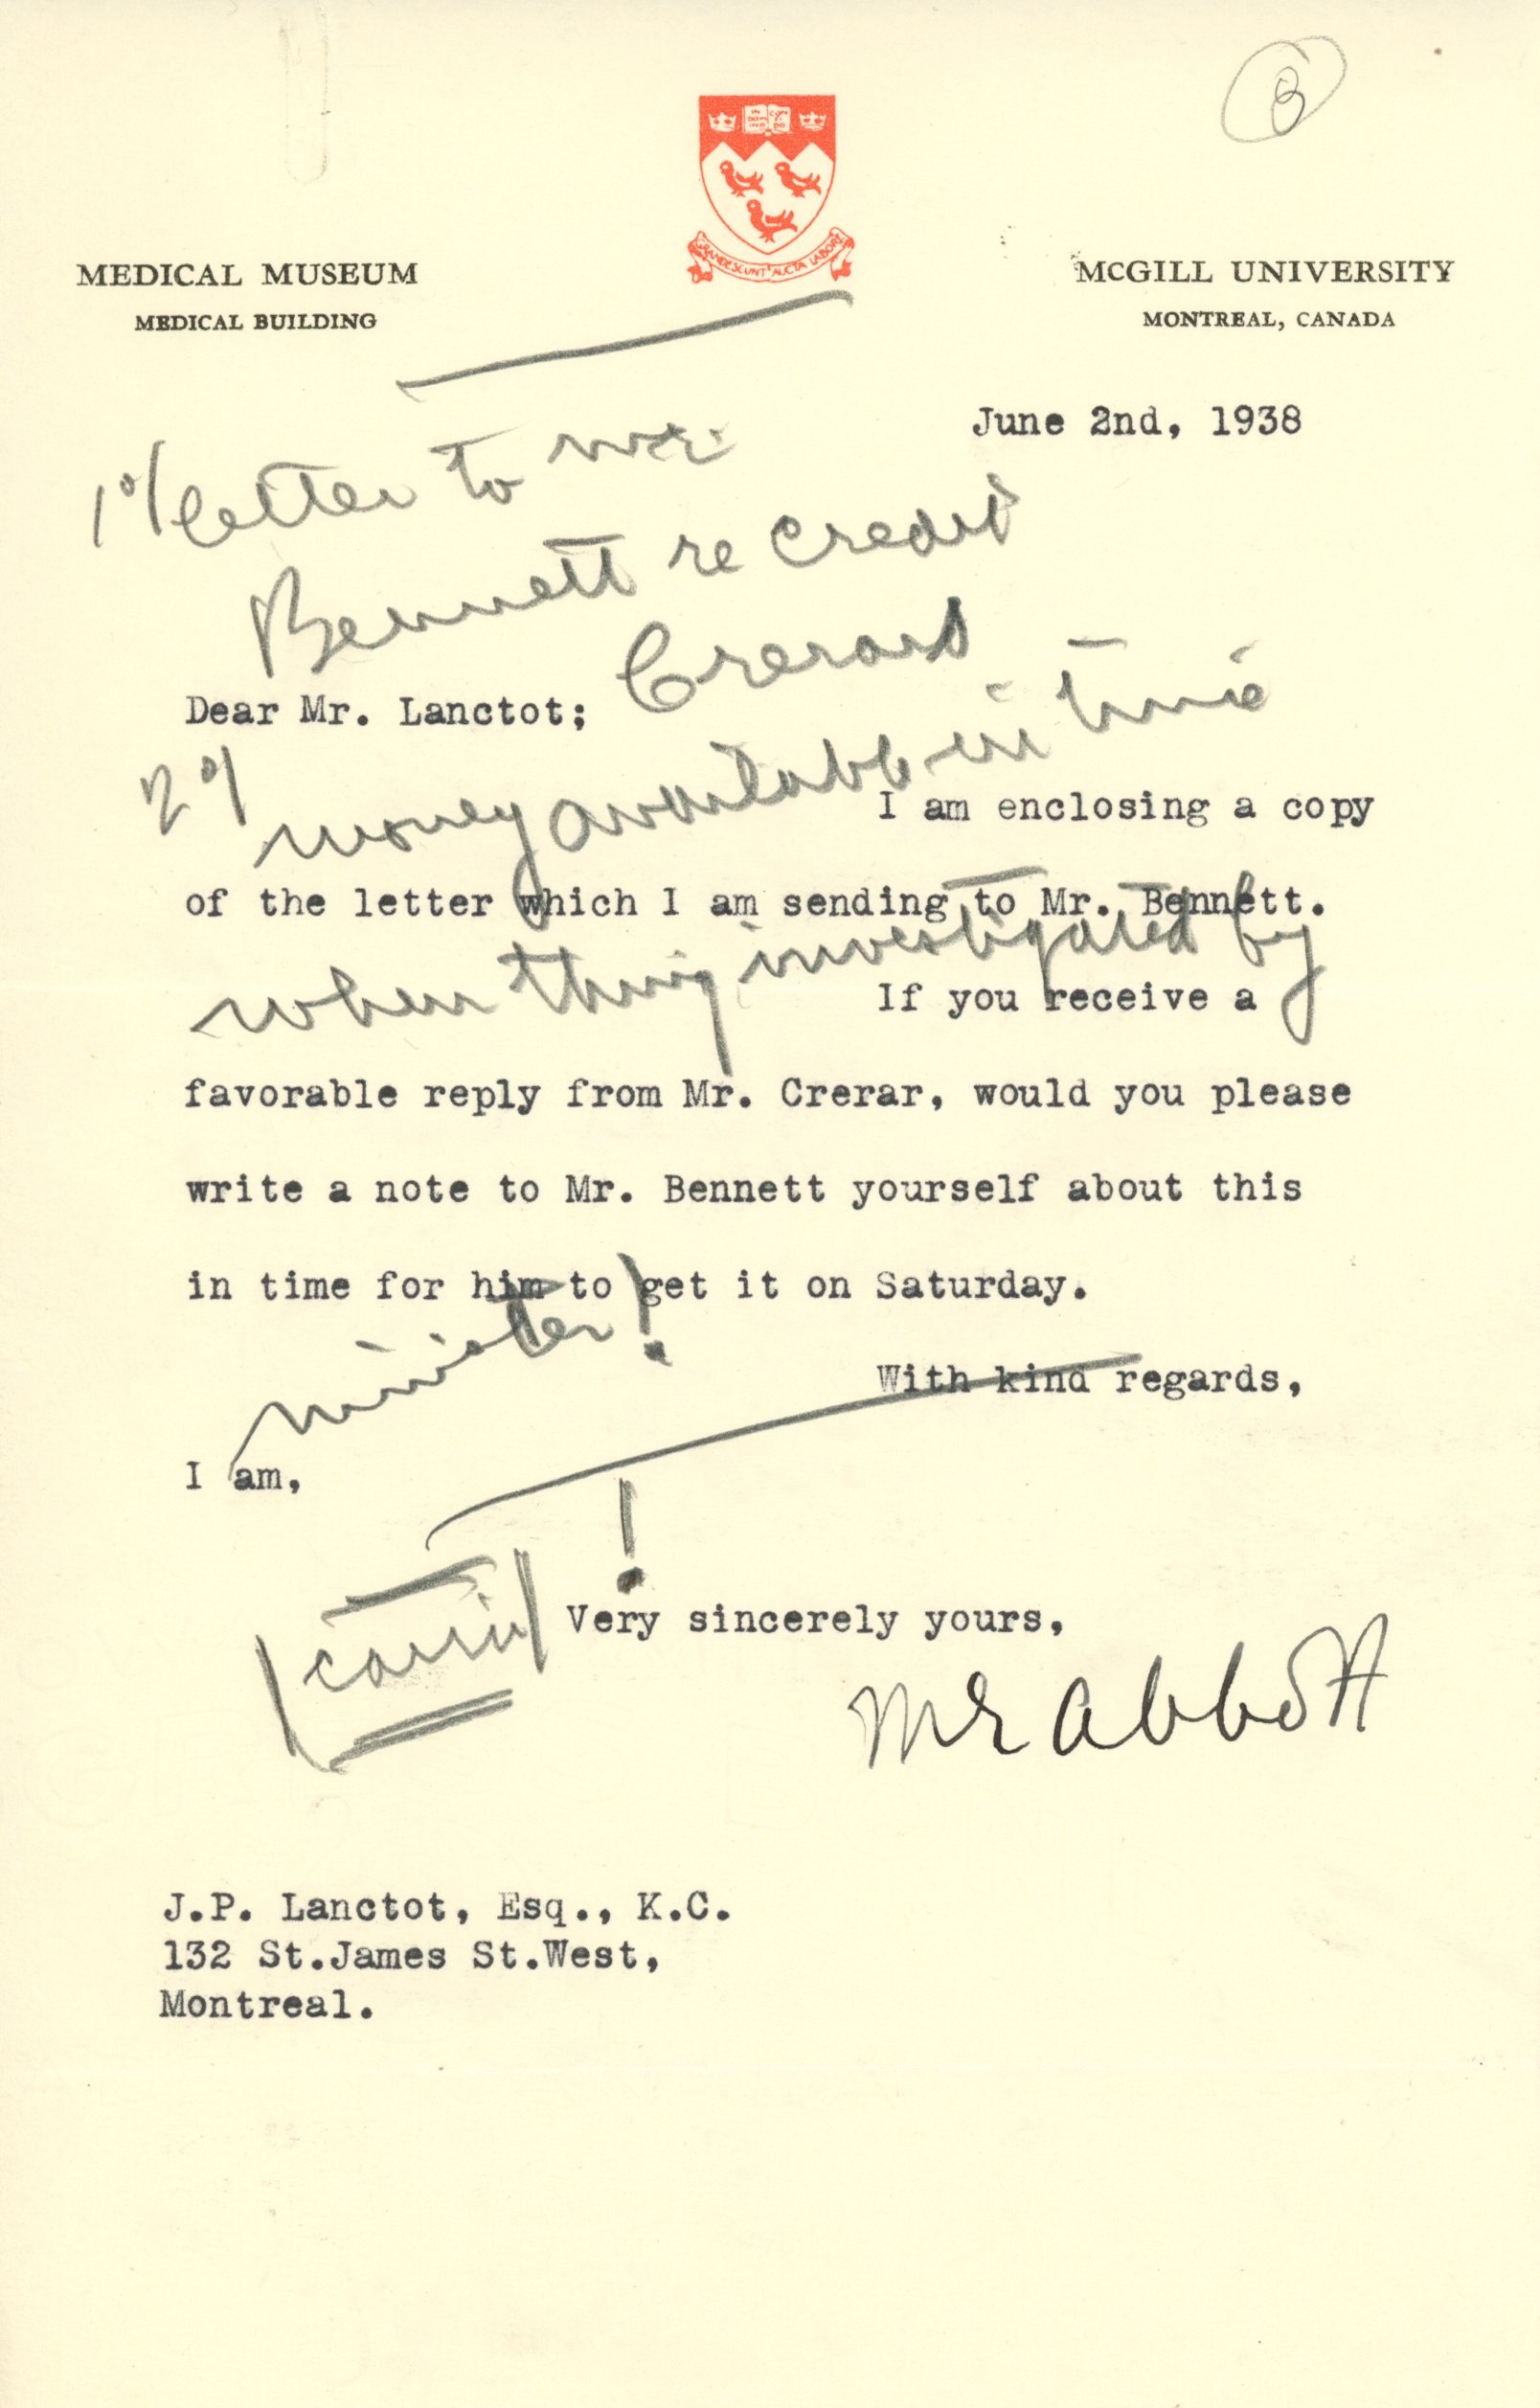 Correspondances pour l'ouverture du Musée: Lettre de Maude Abbott à J.P. Lanctôt concernant la visite du Ministre des Mines et des Ressources m. Crerar et de l’ancien Premier ministre R.B. Bennet à l'ouverture du Musée 2 juin 1938.